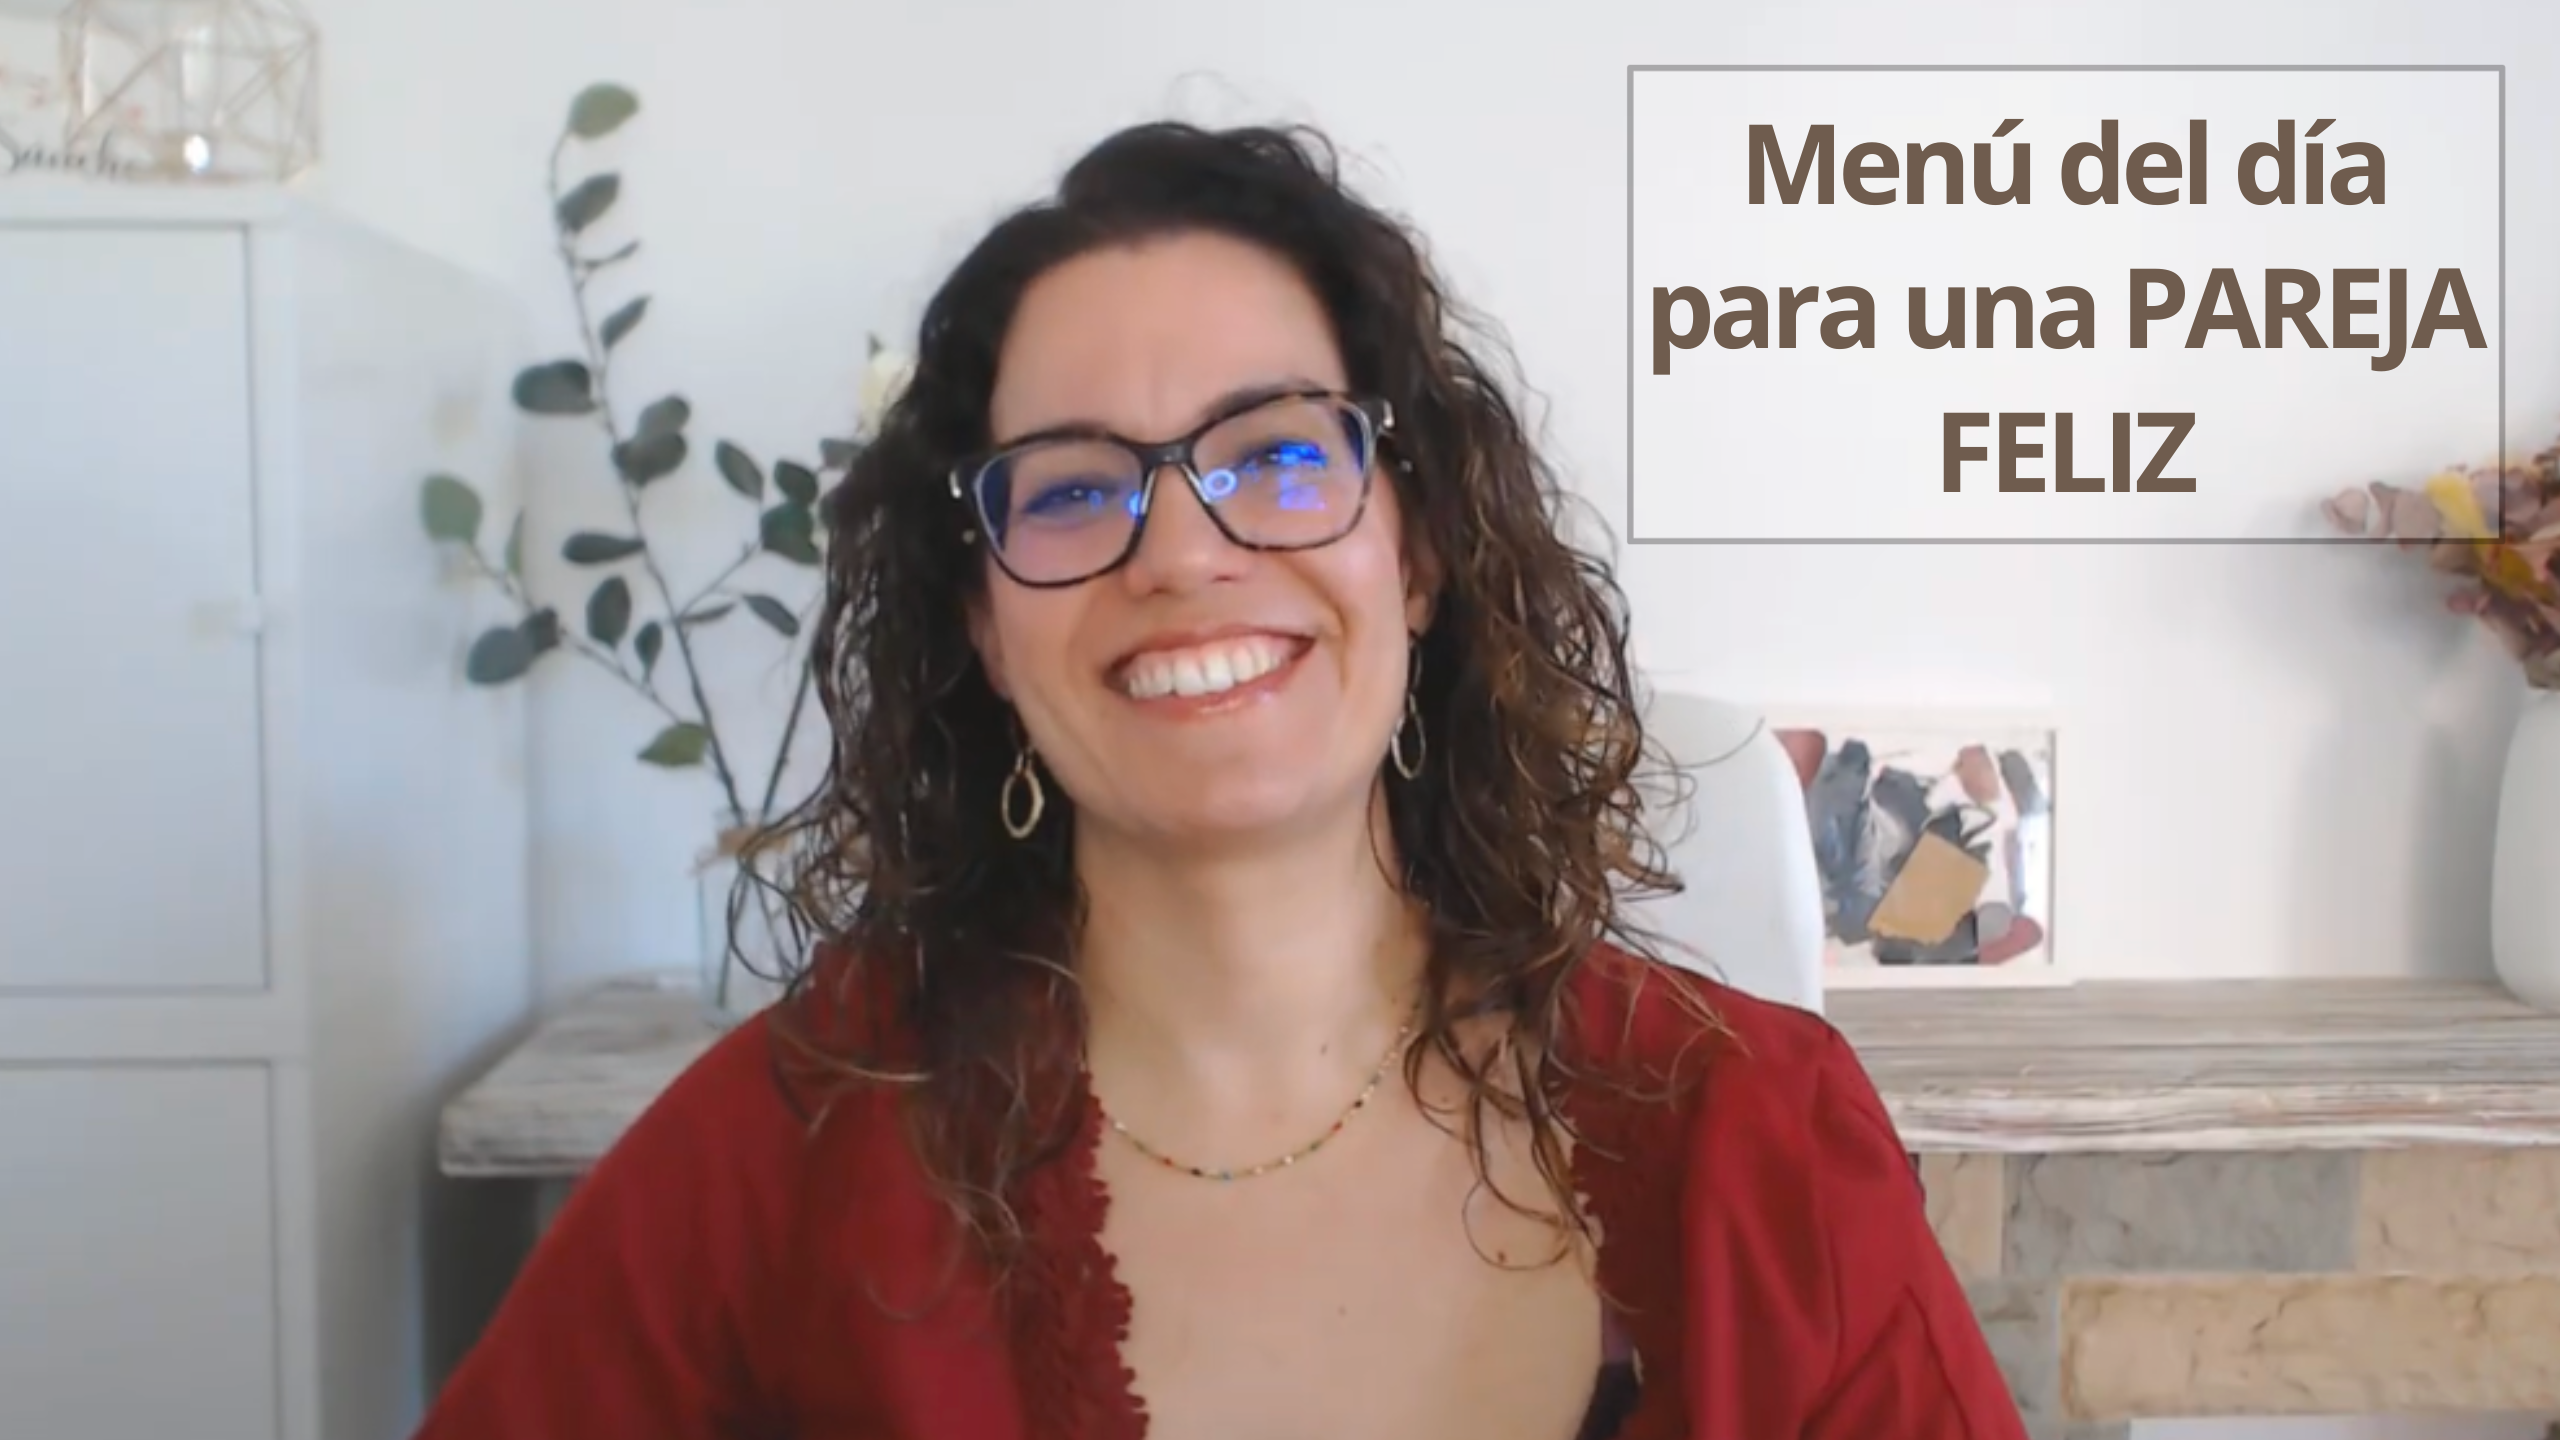 Patricia Sanchez Psicóloga – Podcast Vivir Tranquila EP 11 Blog- El Menú para cultivar la felicidad en pareja